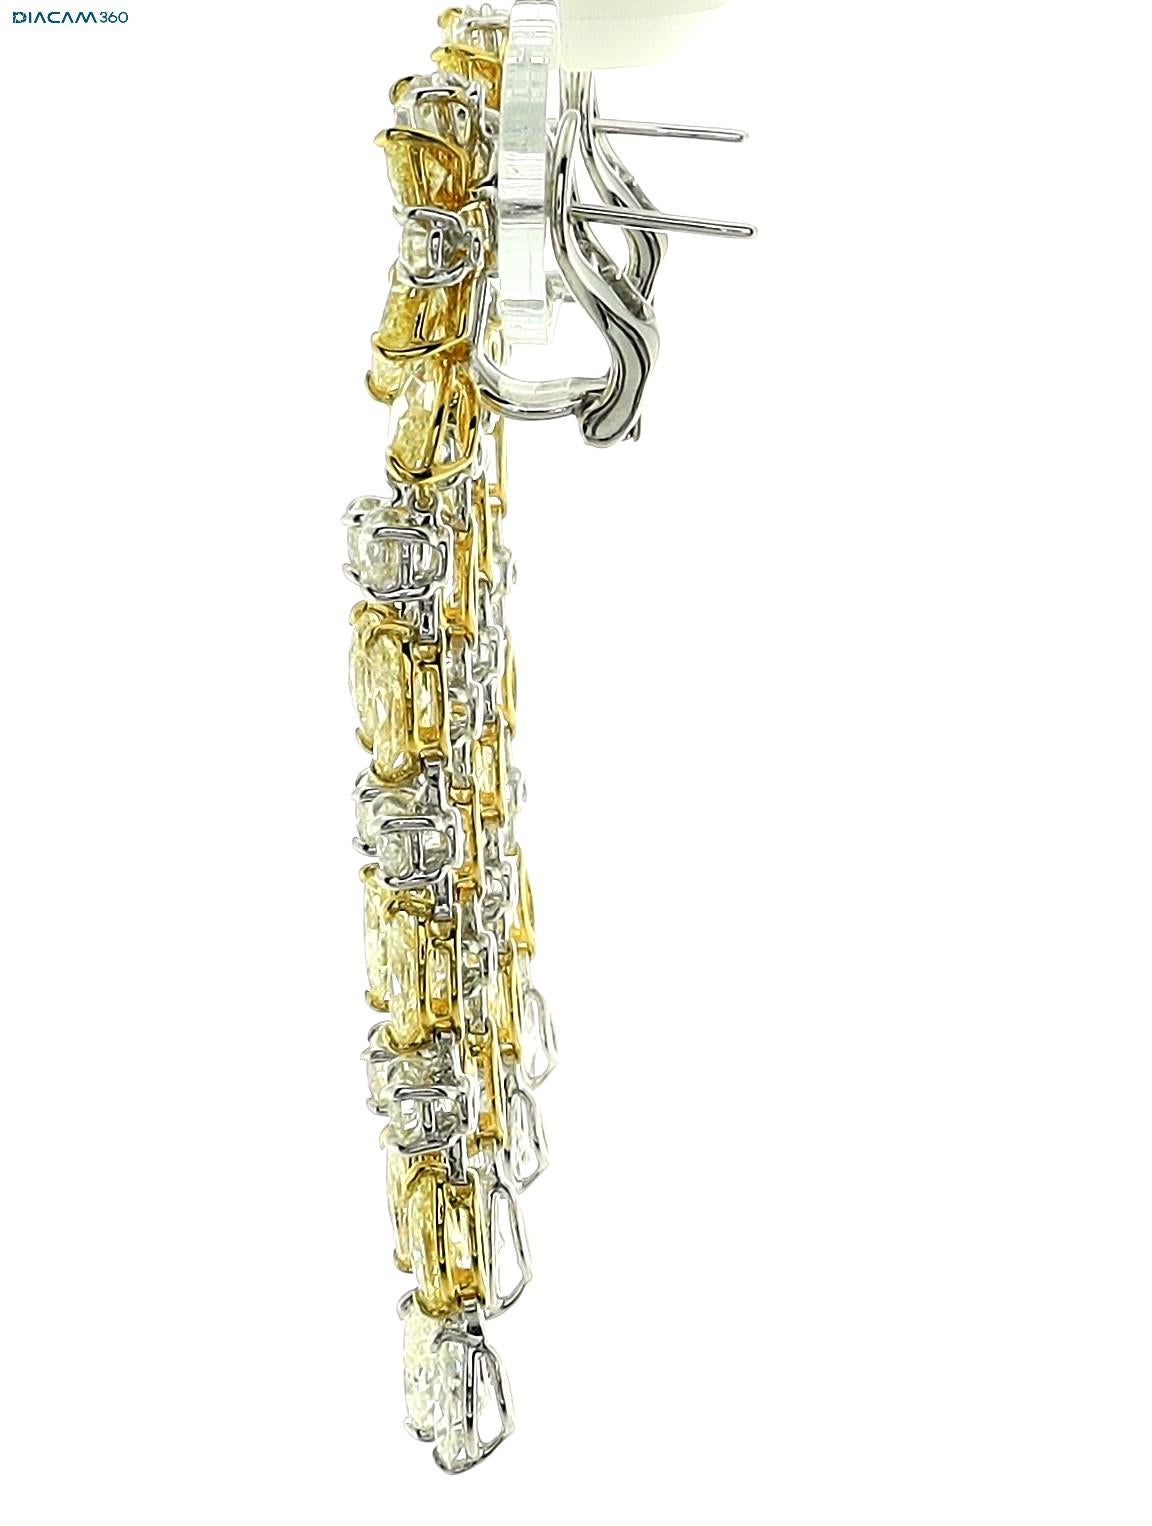 Ohrringe in 18K Gelbgold von Sophia D. Die Clip-Ohrringe sind mit einem gelben Diamanten und einem Diamanten von insgesamt 22,10 Karat besetzt. 

Misst ungefähr 3,0